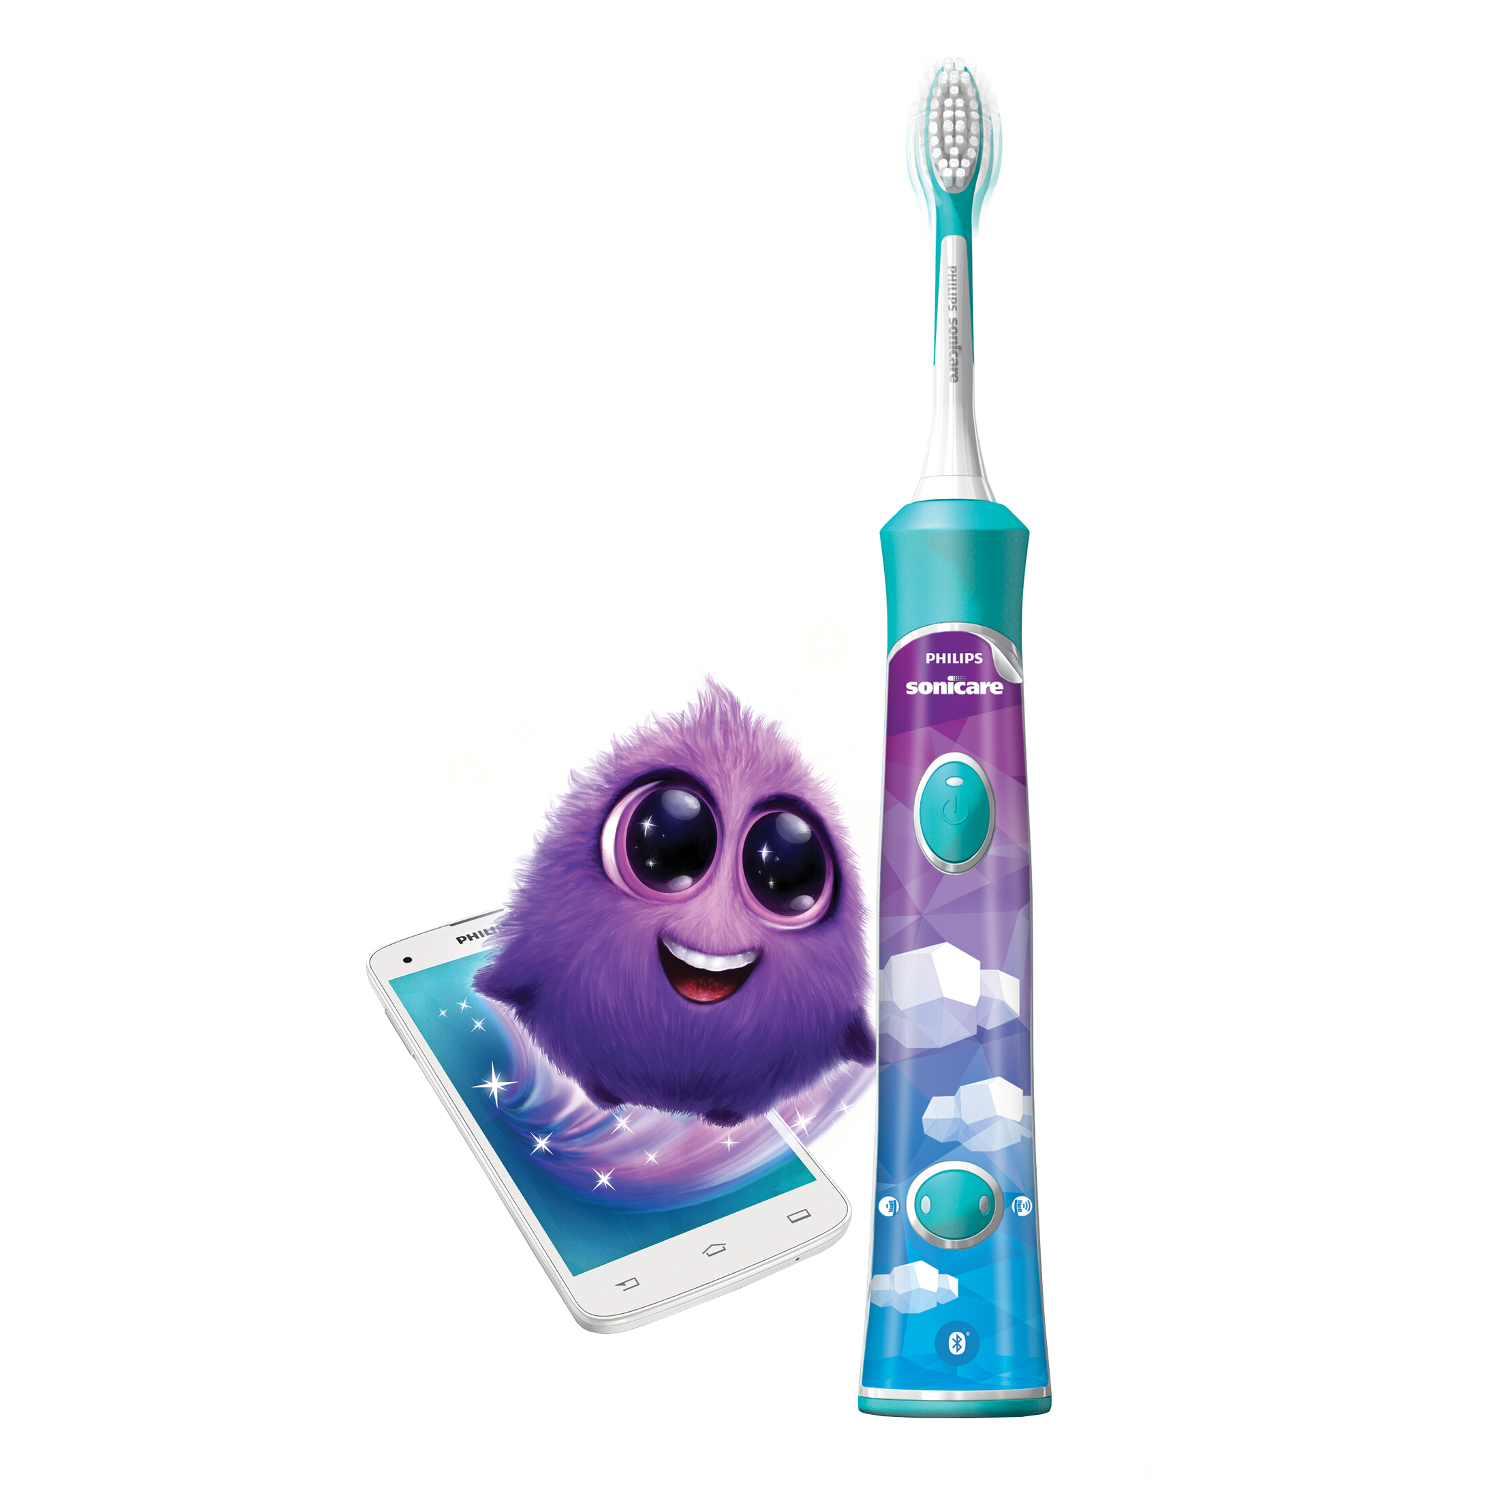 Филипс Соникеа щетка зубная электрическая для детей от 3лет поддержка блютус